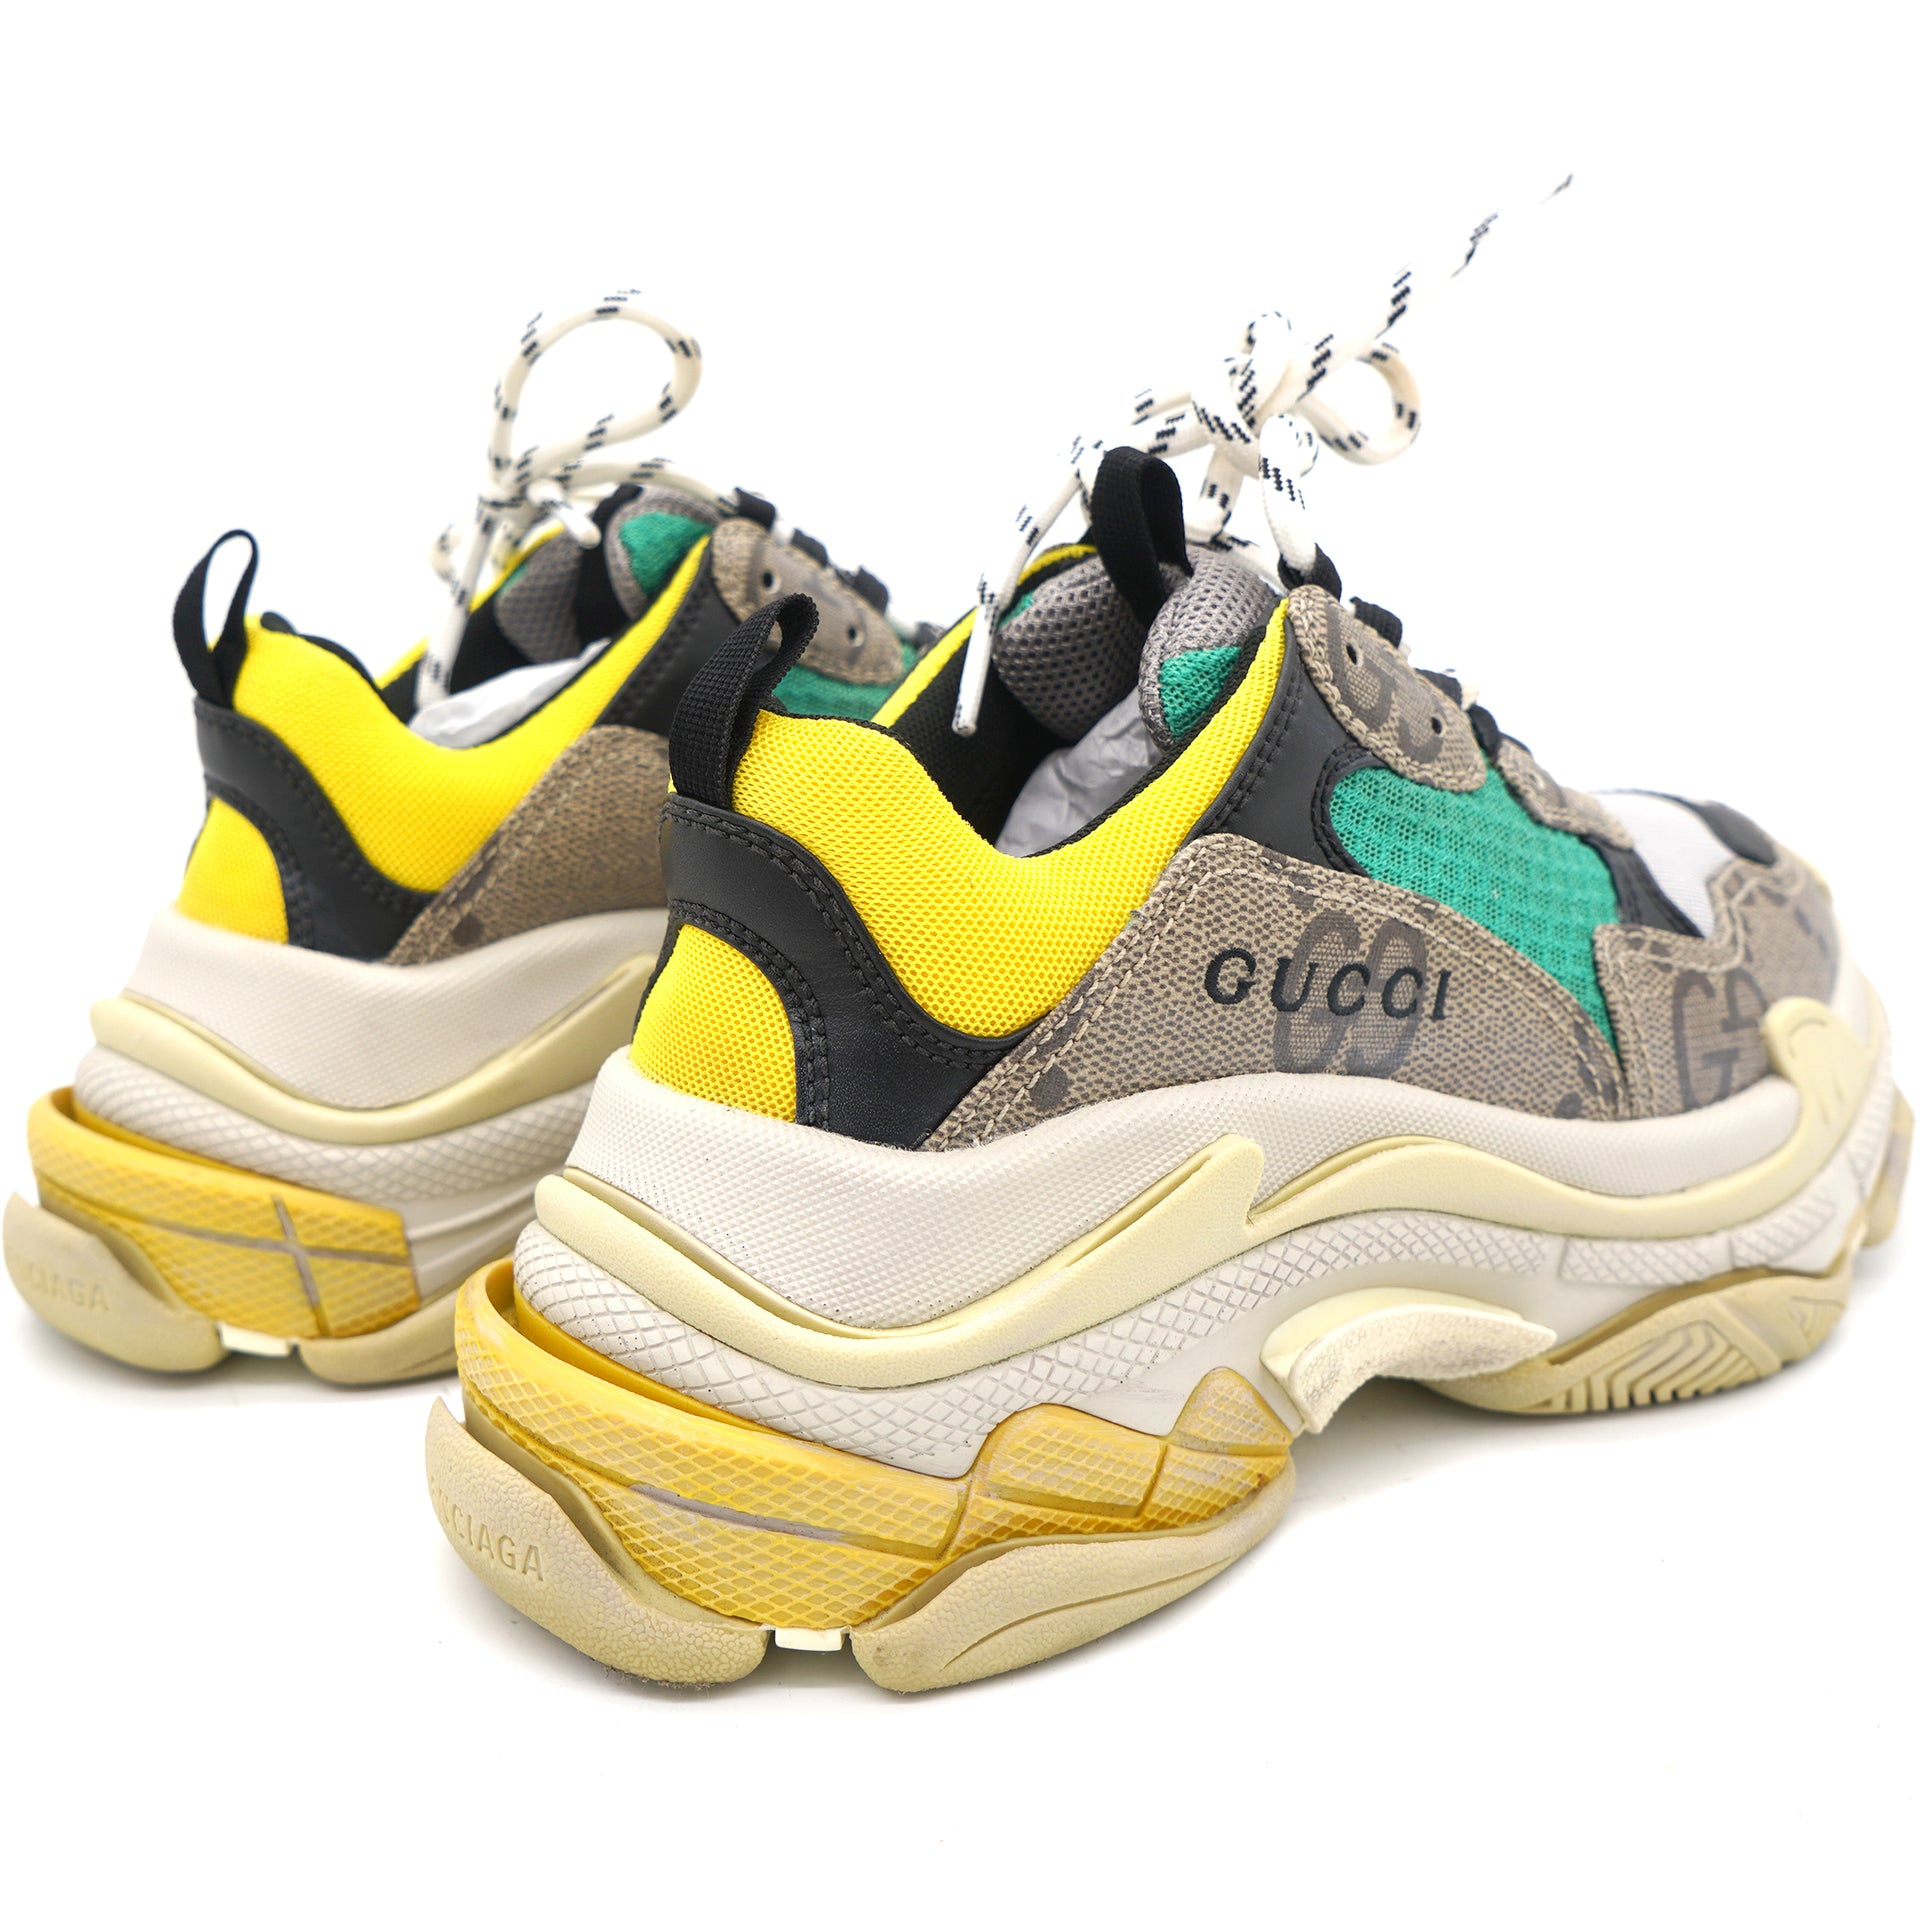 Gucci x Balenciaga Maxi GG Supreme Monogram Womens Triple S Sneakers 37